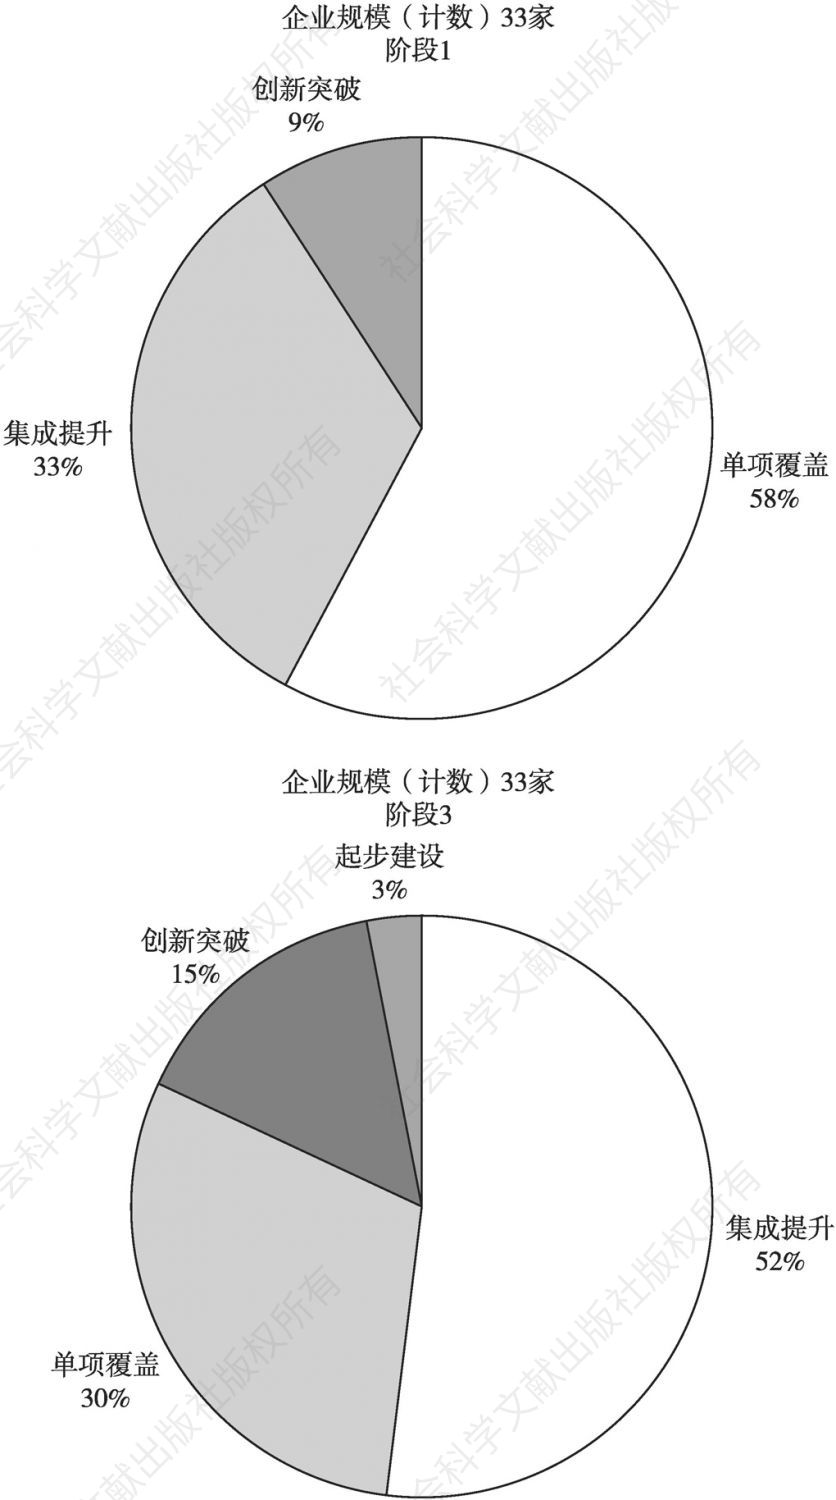 图7 广州市跟踪企业的发展阶段变化